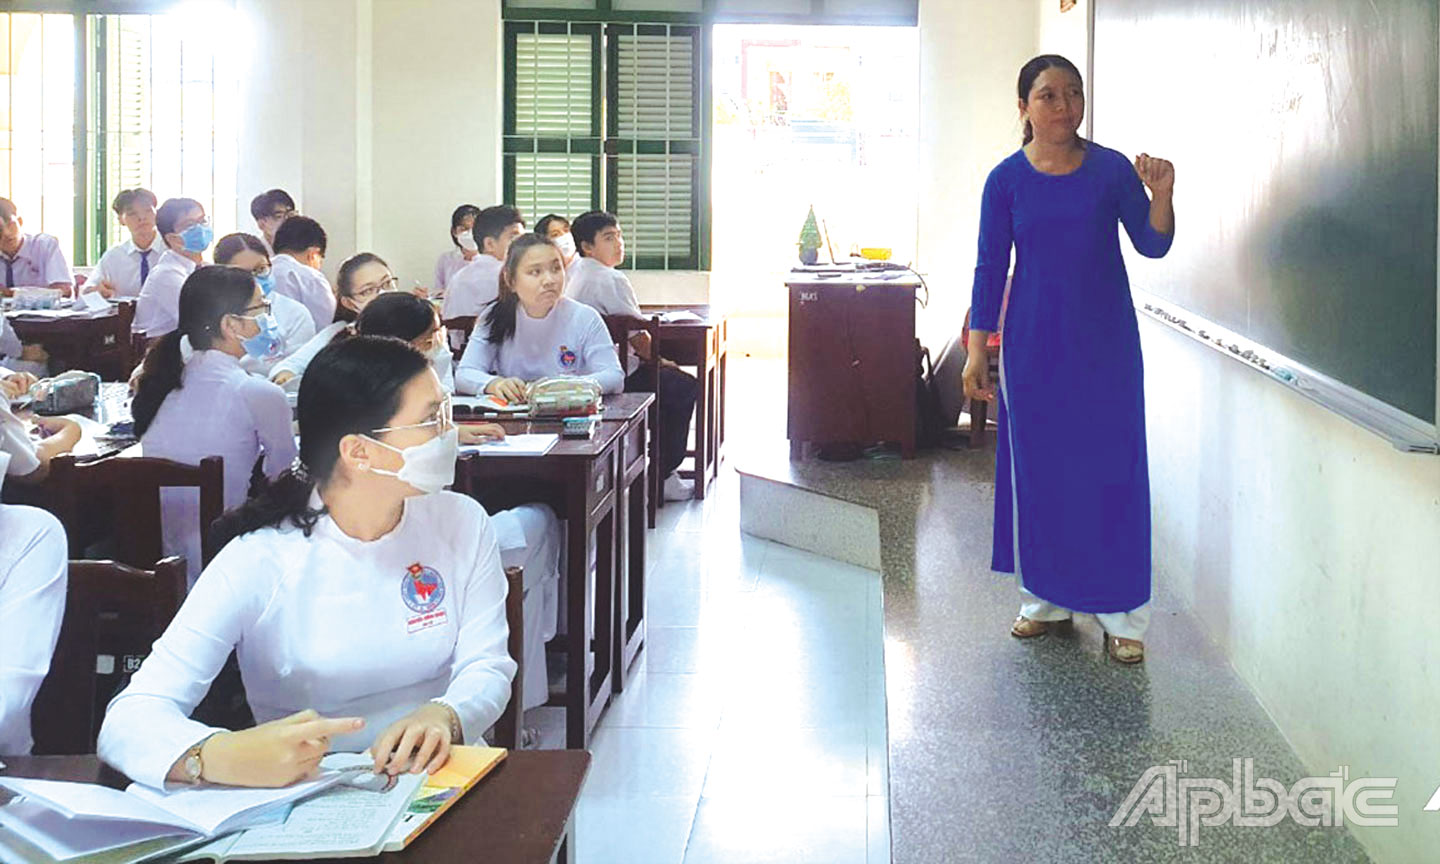 Ngành Giáo dục tỉnh Tiền Giang thực hiện công tác bình đẳng giới với nhiều chuyển biến tích cực. (Ảnh chụp tại Trường THPT Nguyễn Đình Chiểu, TP. Mỹ Tho).                                                         